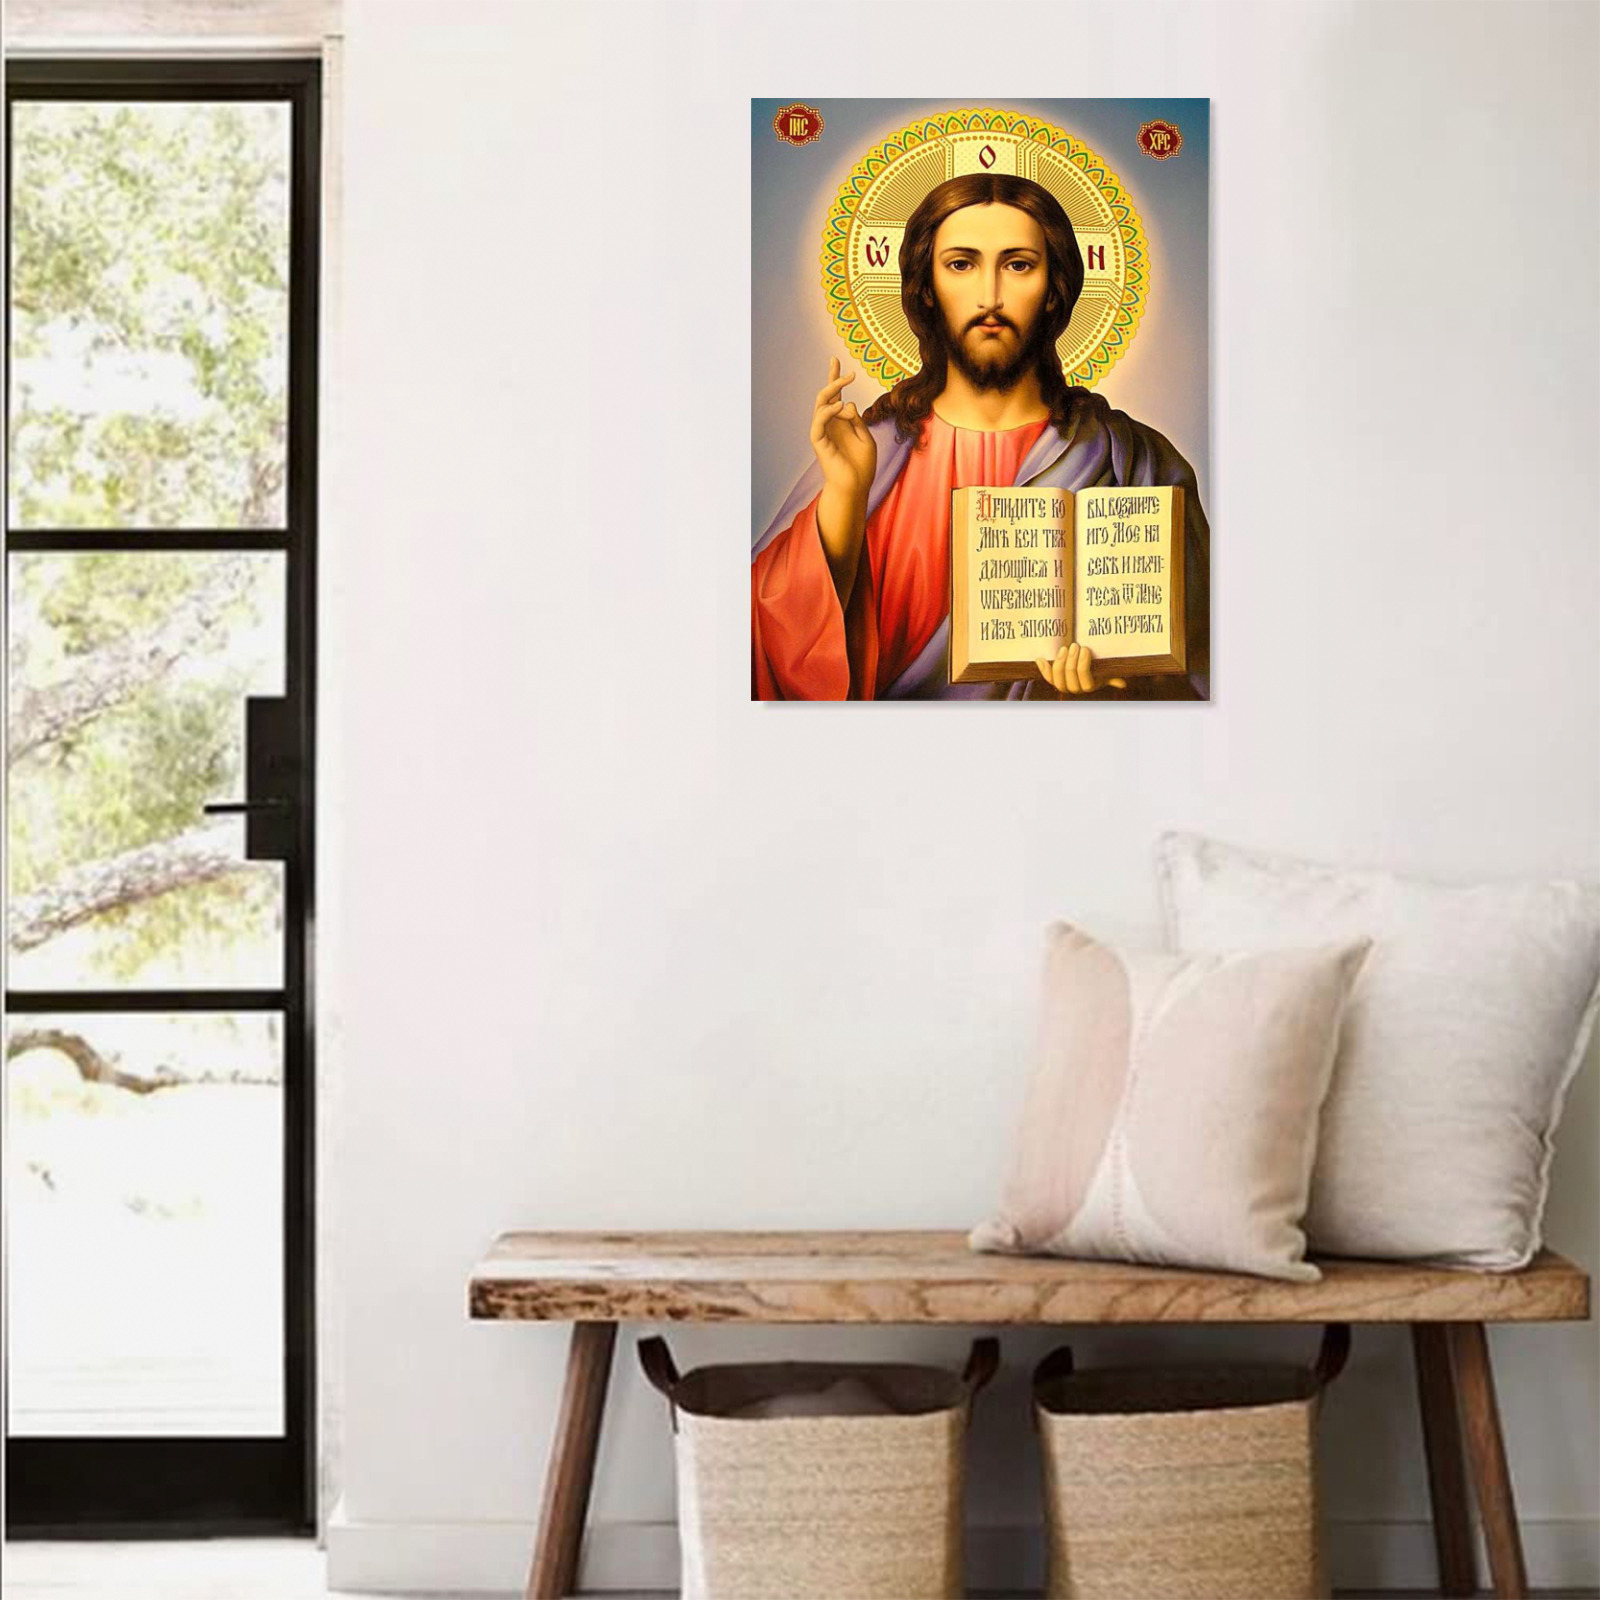 Jesus Christ (ISUS HRIST) Wood Print 12"x16"